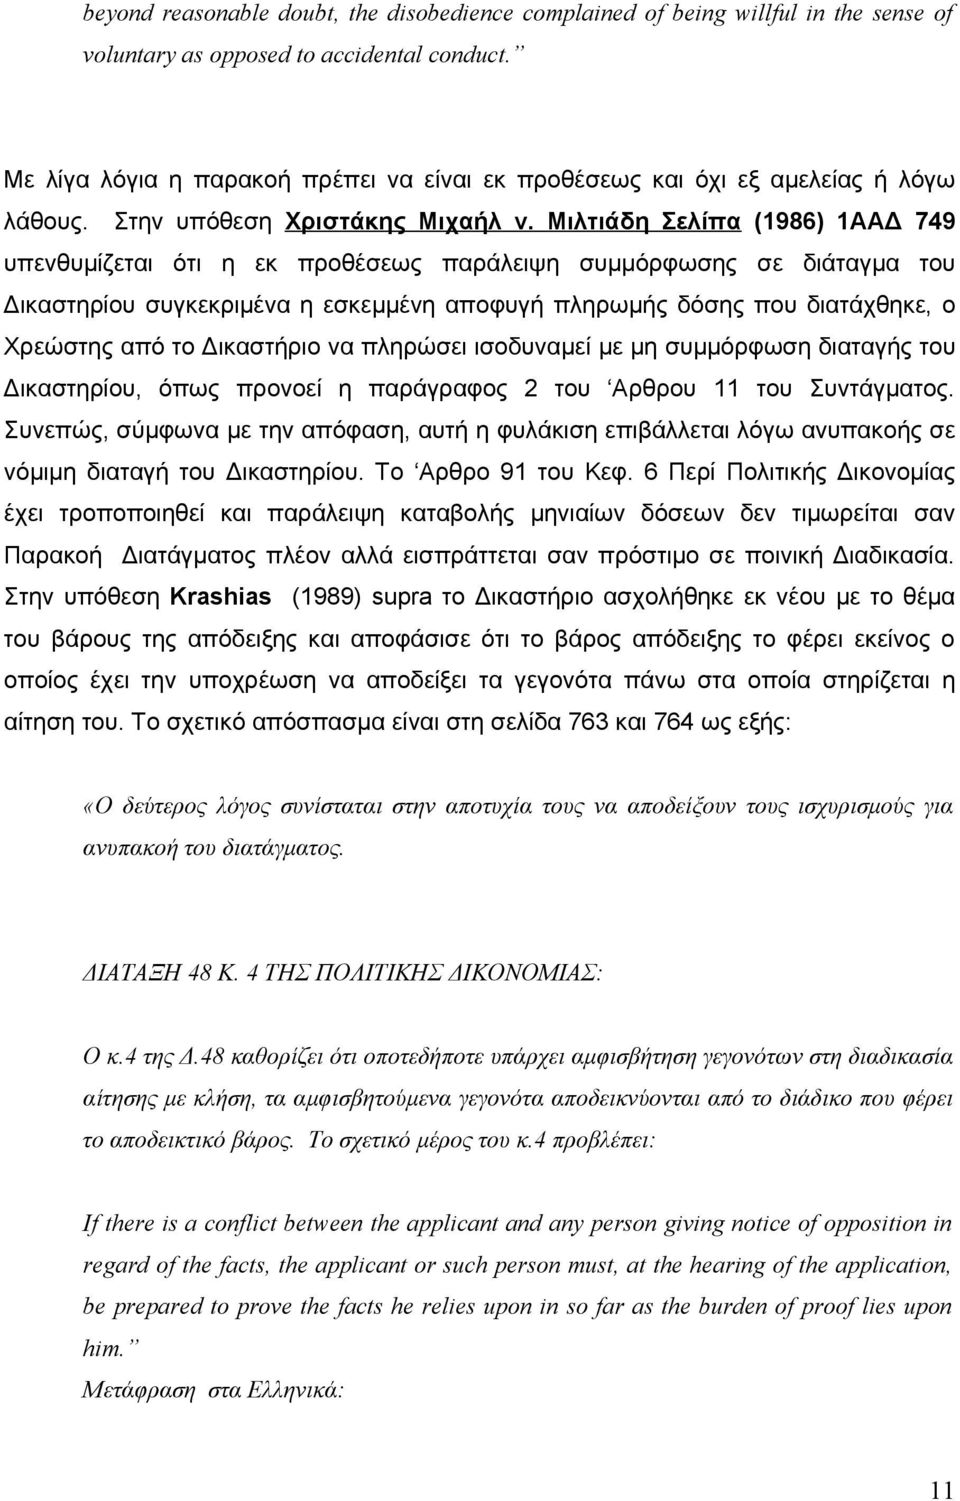 Μιλτιάδη Σελίπα (1986) 1ΑΑΔ 749 υπενθυμίζεται ότι η εκ προθέσεως παράλειψη συμμόρφωσης σε διάταγμα του Δικαστηρίου συγκεκριμένα η εσκεμμένη αποφυγή πληρωμής δόσης που διατάχθηκε, ο Χρεώστης από το